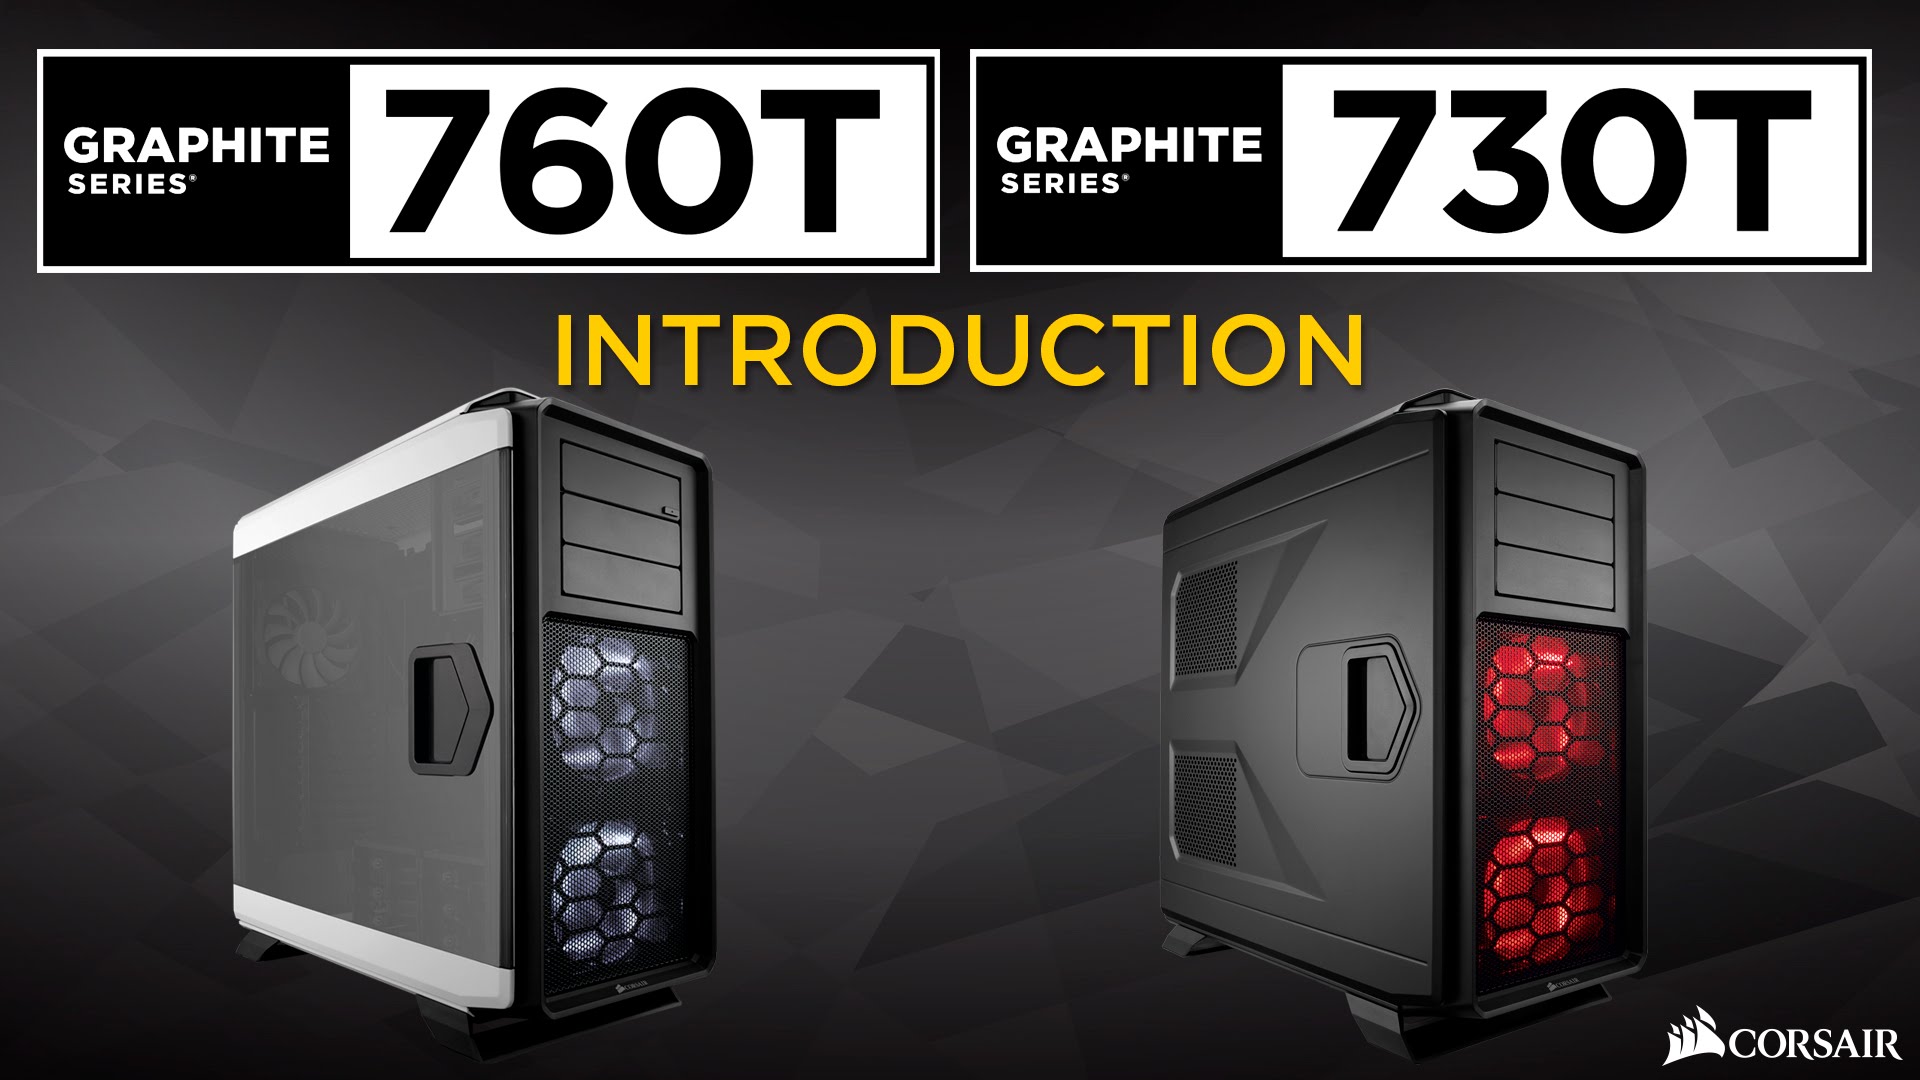 diapositiva 1 de 11, mostrar imagen más grande, presentación de las carcasas para PC de torre completa Graphite Series 730t y Graphite Series 760t